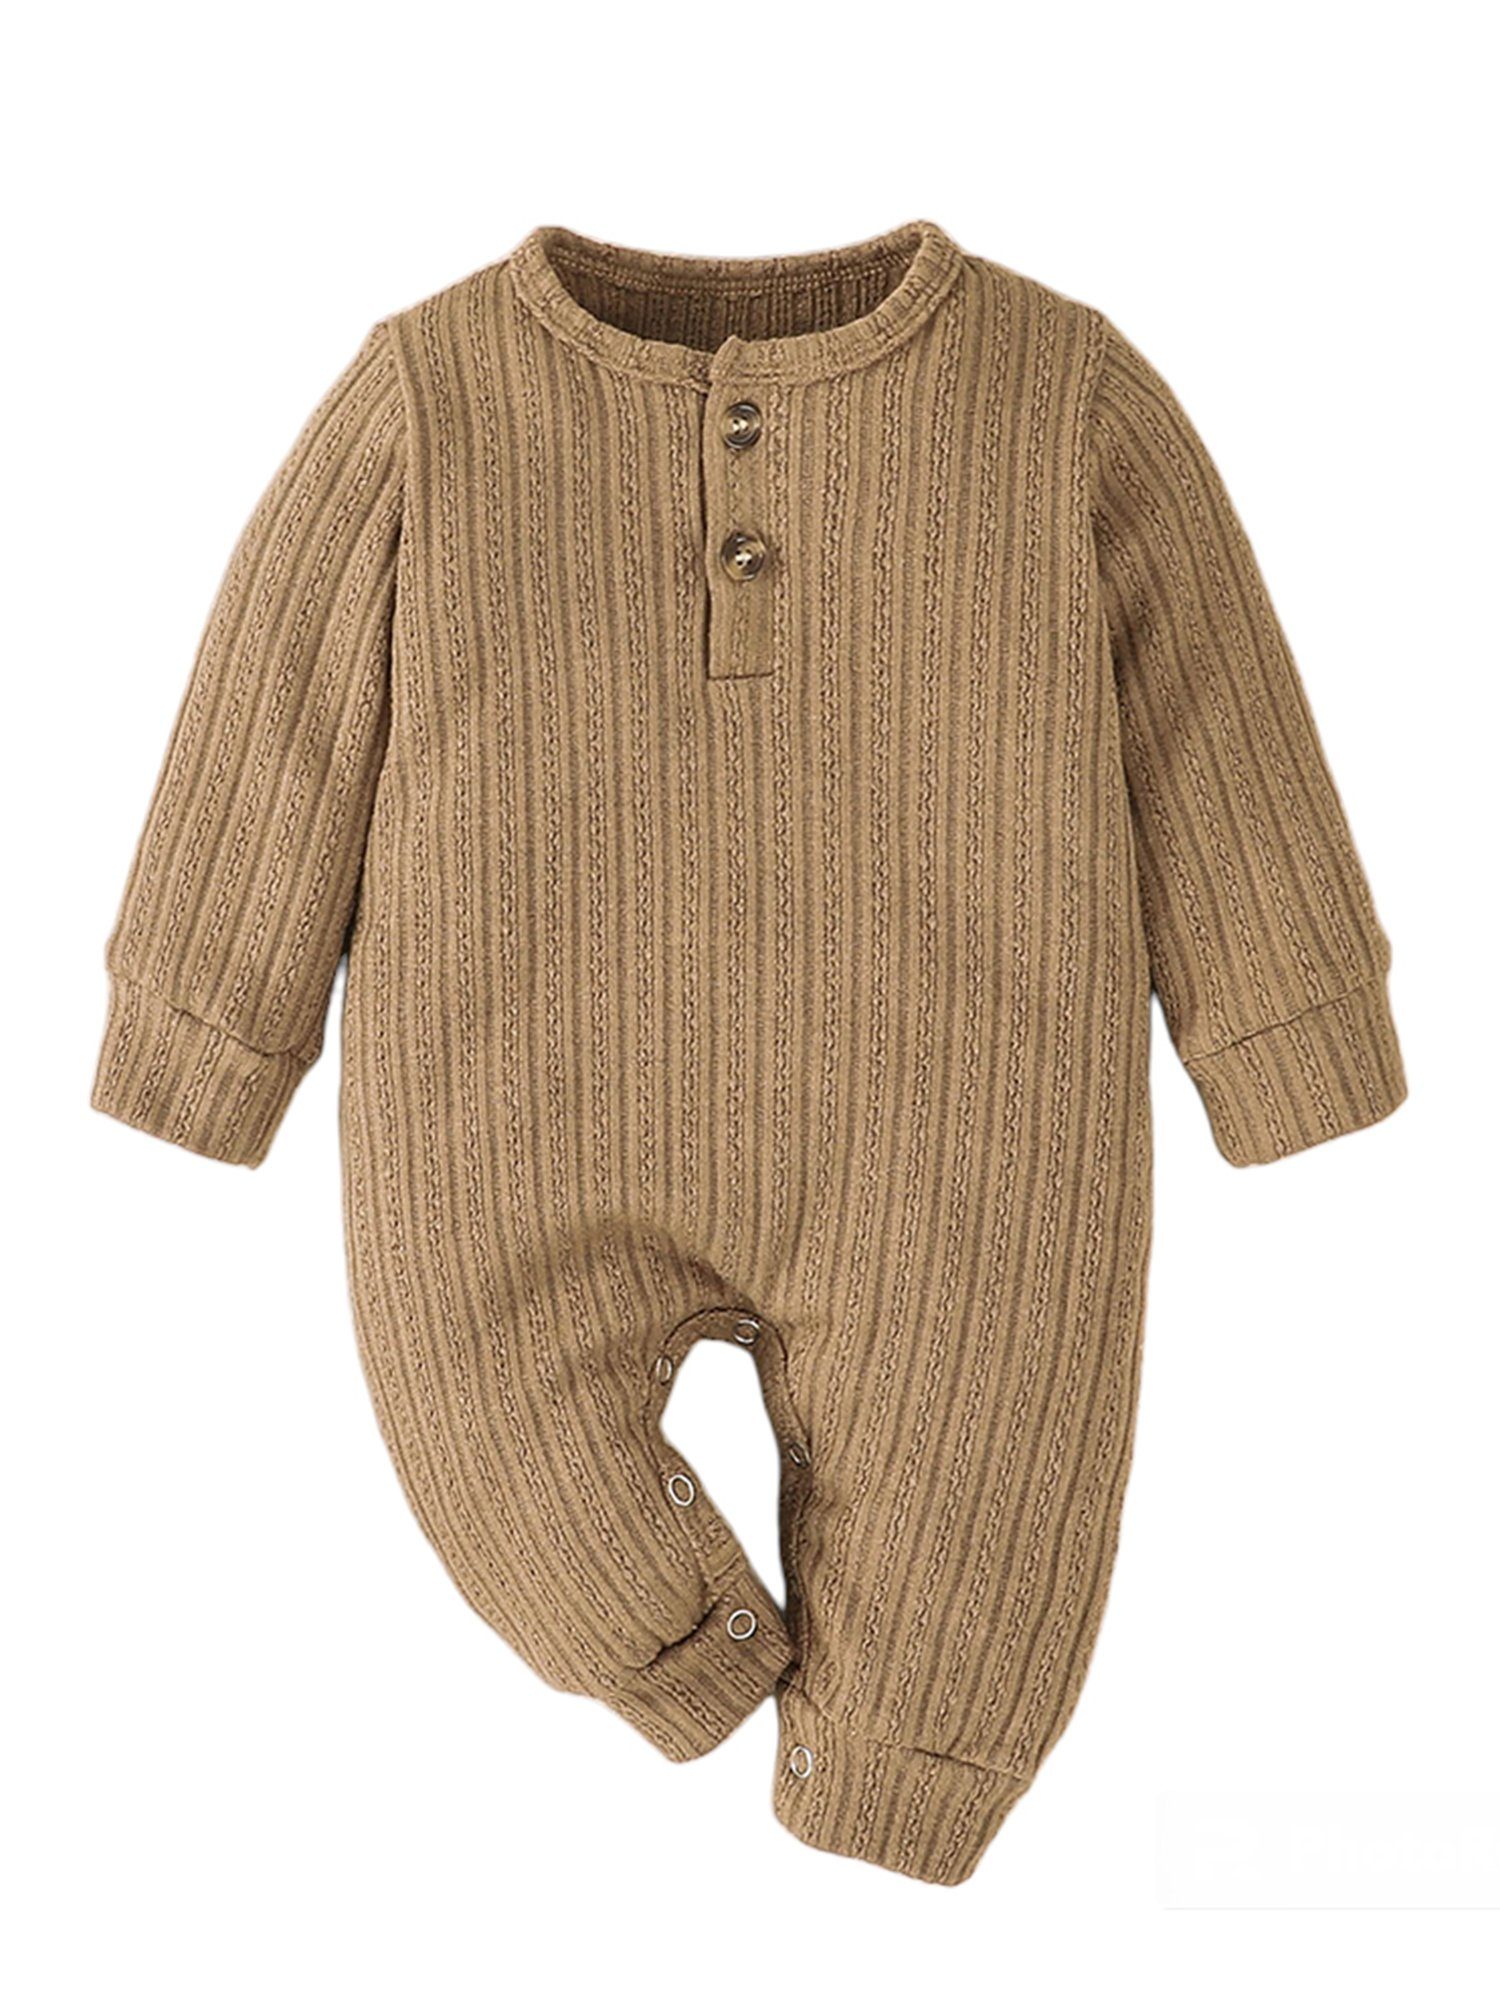 Lapastyle Strampler Einfarbiger langärmliger Strampler mit Knopfverschluss für Unisex Baby Jersey Anzug Braun